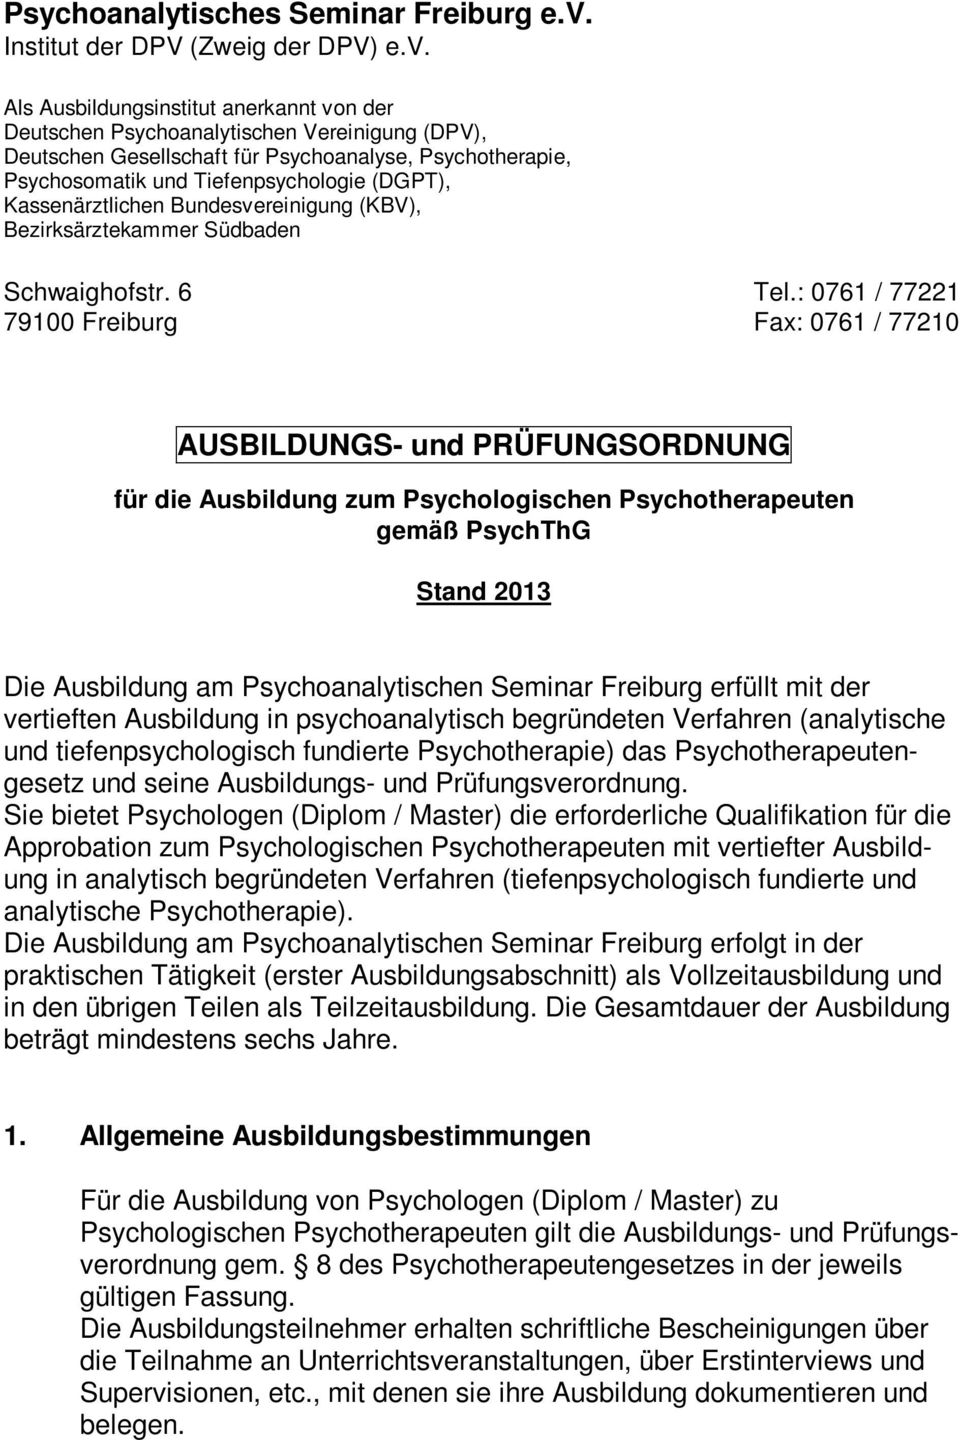 Als Ausbildungsinstitut anerkannt von der Deutschen Psychoanalytischen Vereinigung (DPV), Deutschen Gesellschaft für Psychoanalyse, Psychotherapie, Psychosomatik und Tiefenpsychologie (DGPT),